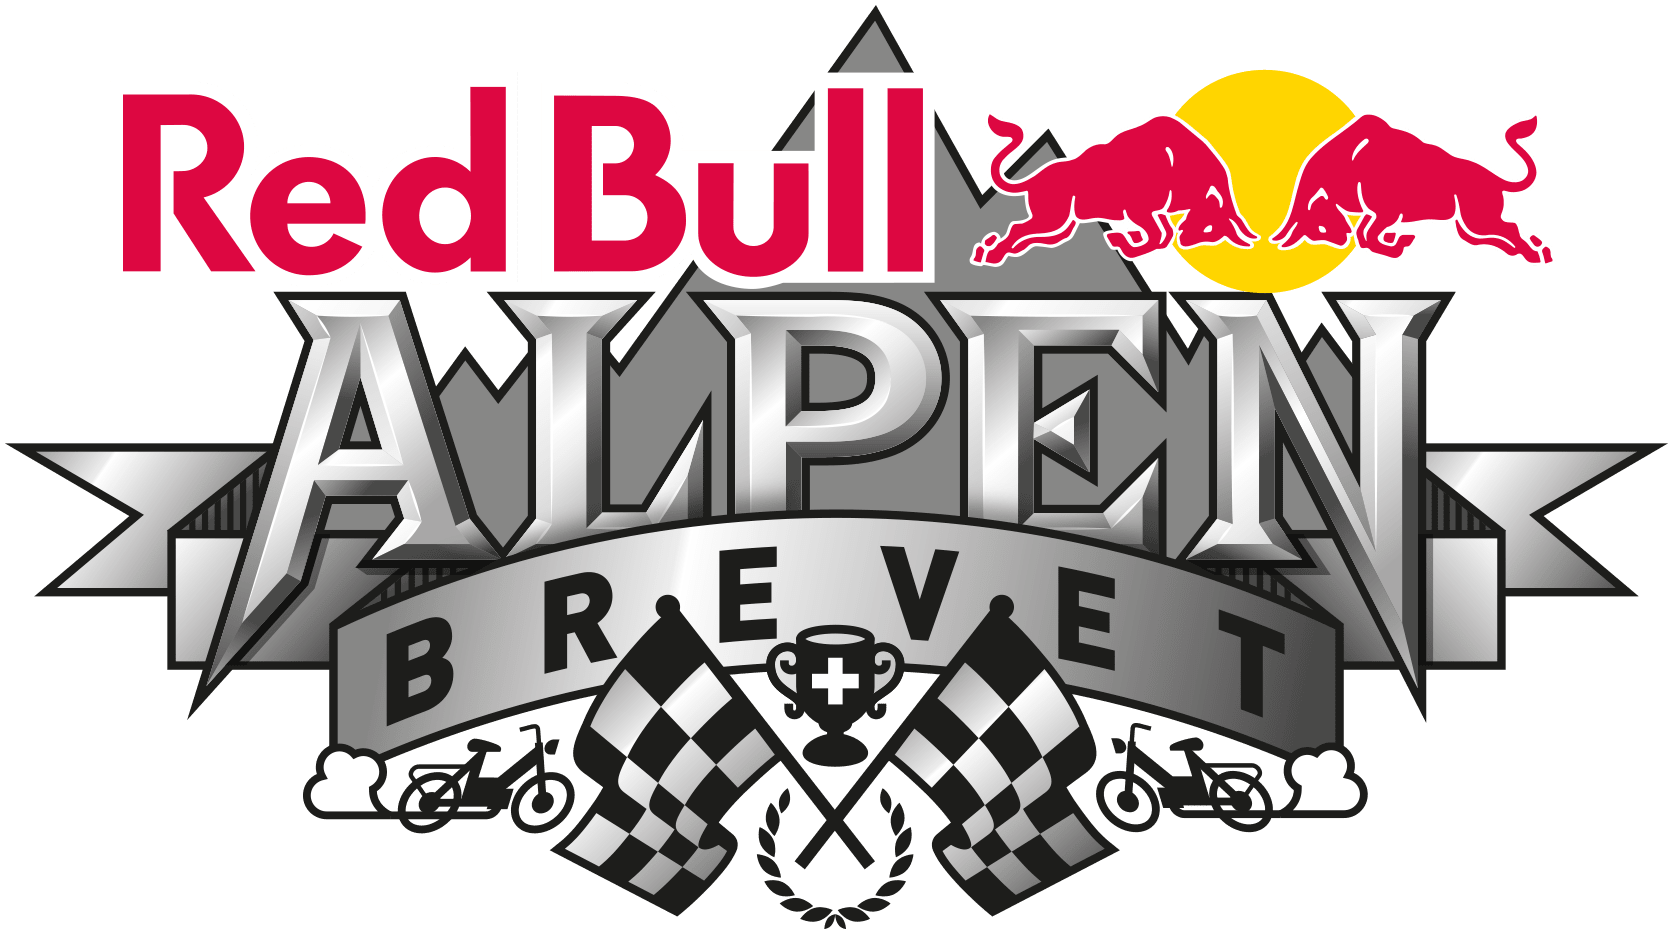 Red Bull Alpenbrevet Logo